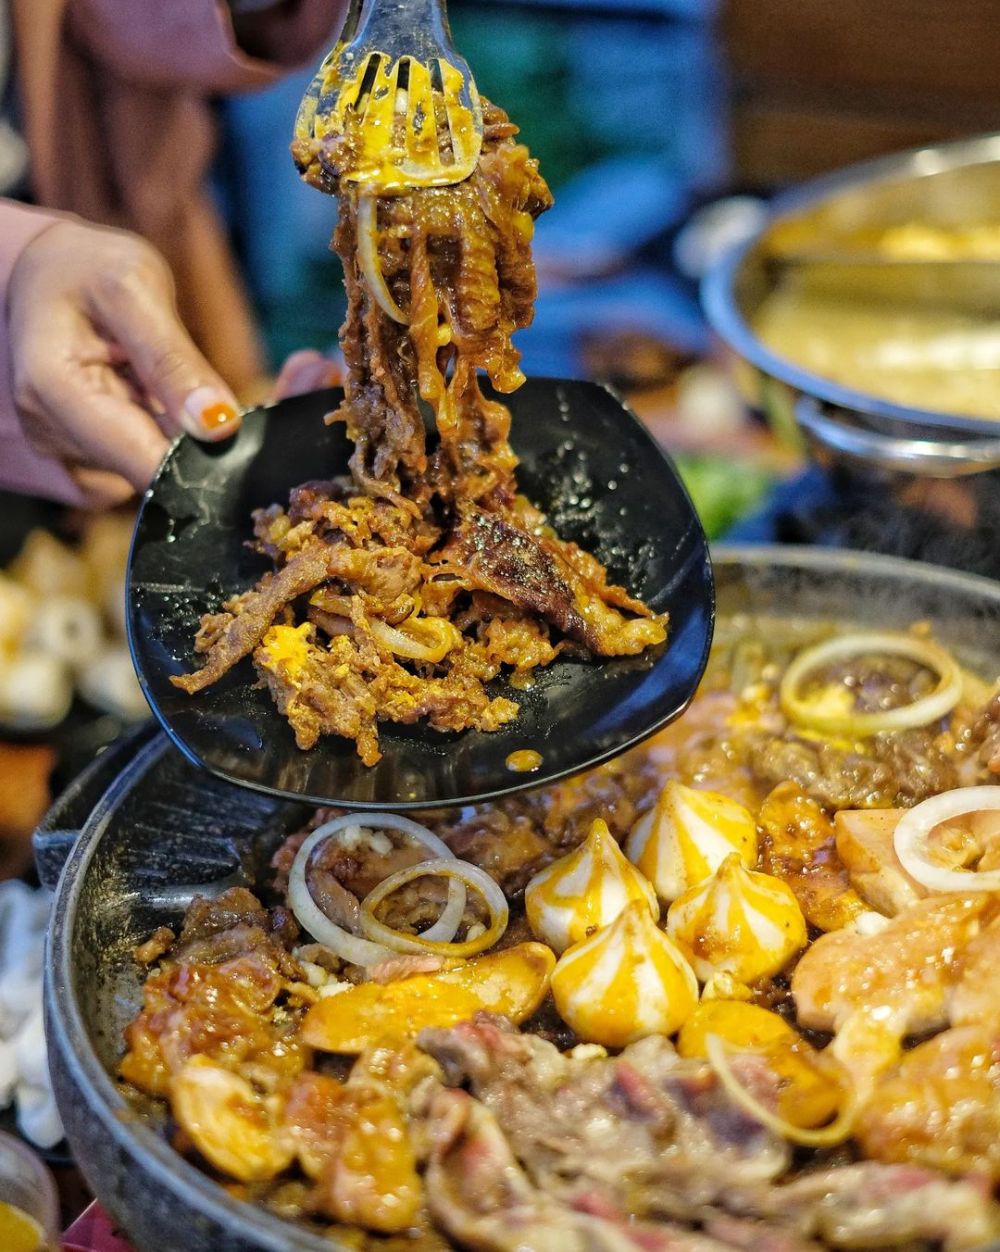 6 Restoran Korea All You Can Eat di Jogja, Bisa Makan Sepuasnya!